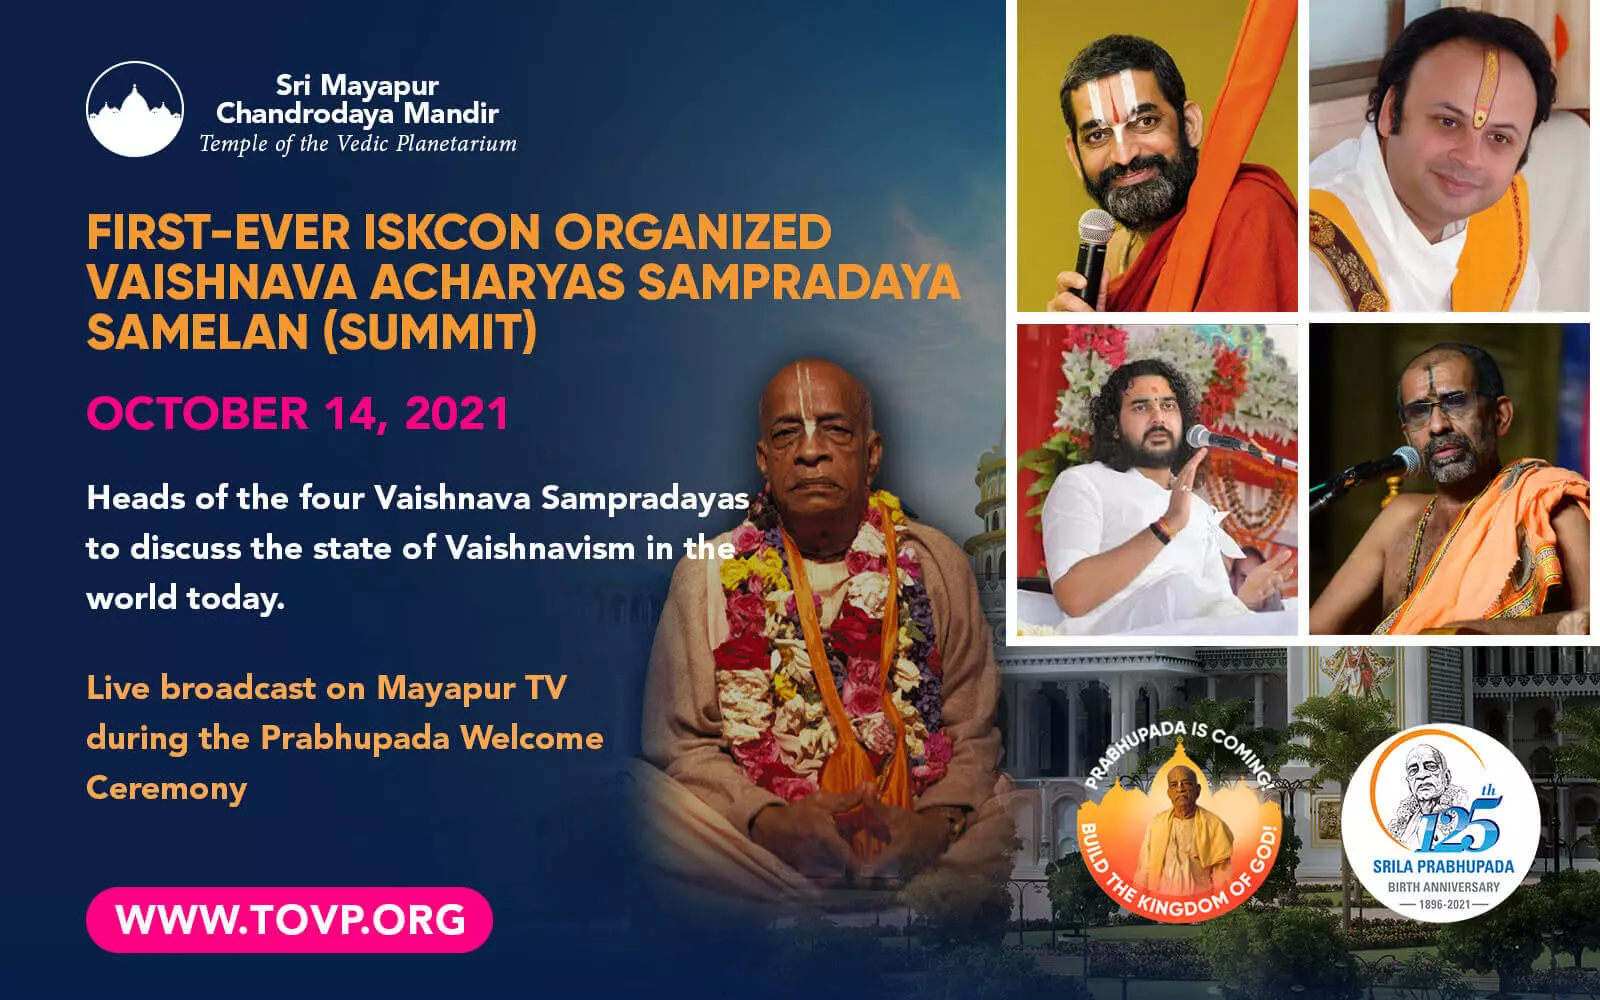 Le tout premier ISKCON organisé Vaishnava Acharyas Sampradaya Samelan (Sommet) - 14 octobre 2021